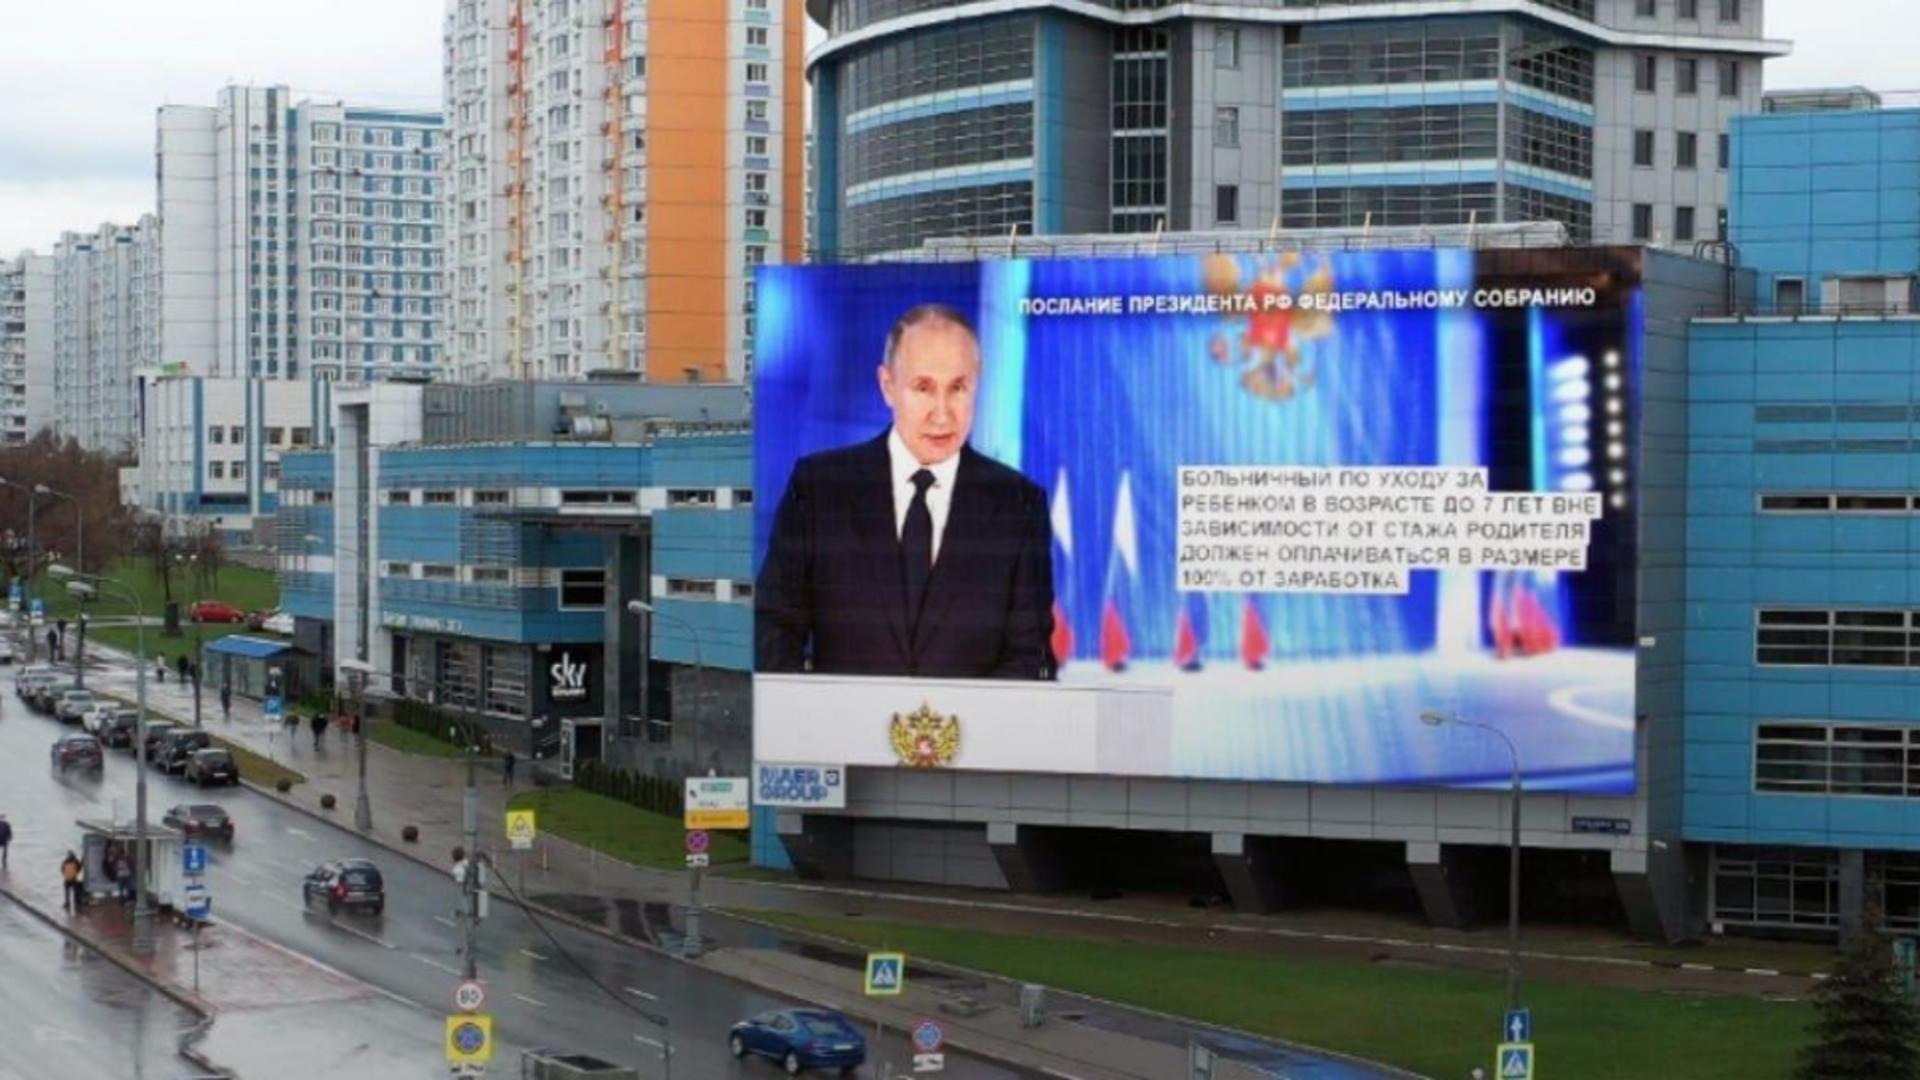 Discursul lui Putin, difuzat pe ecrane uriașe (Nexta)